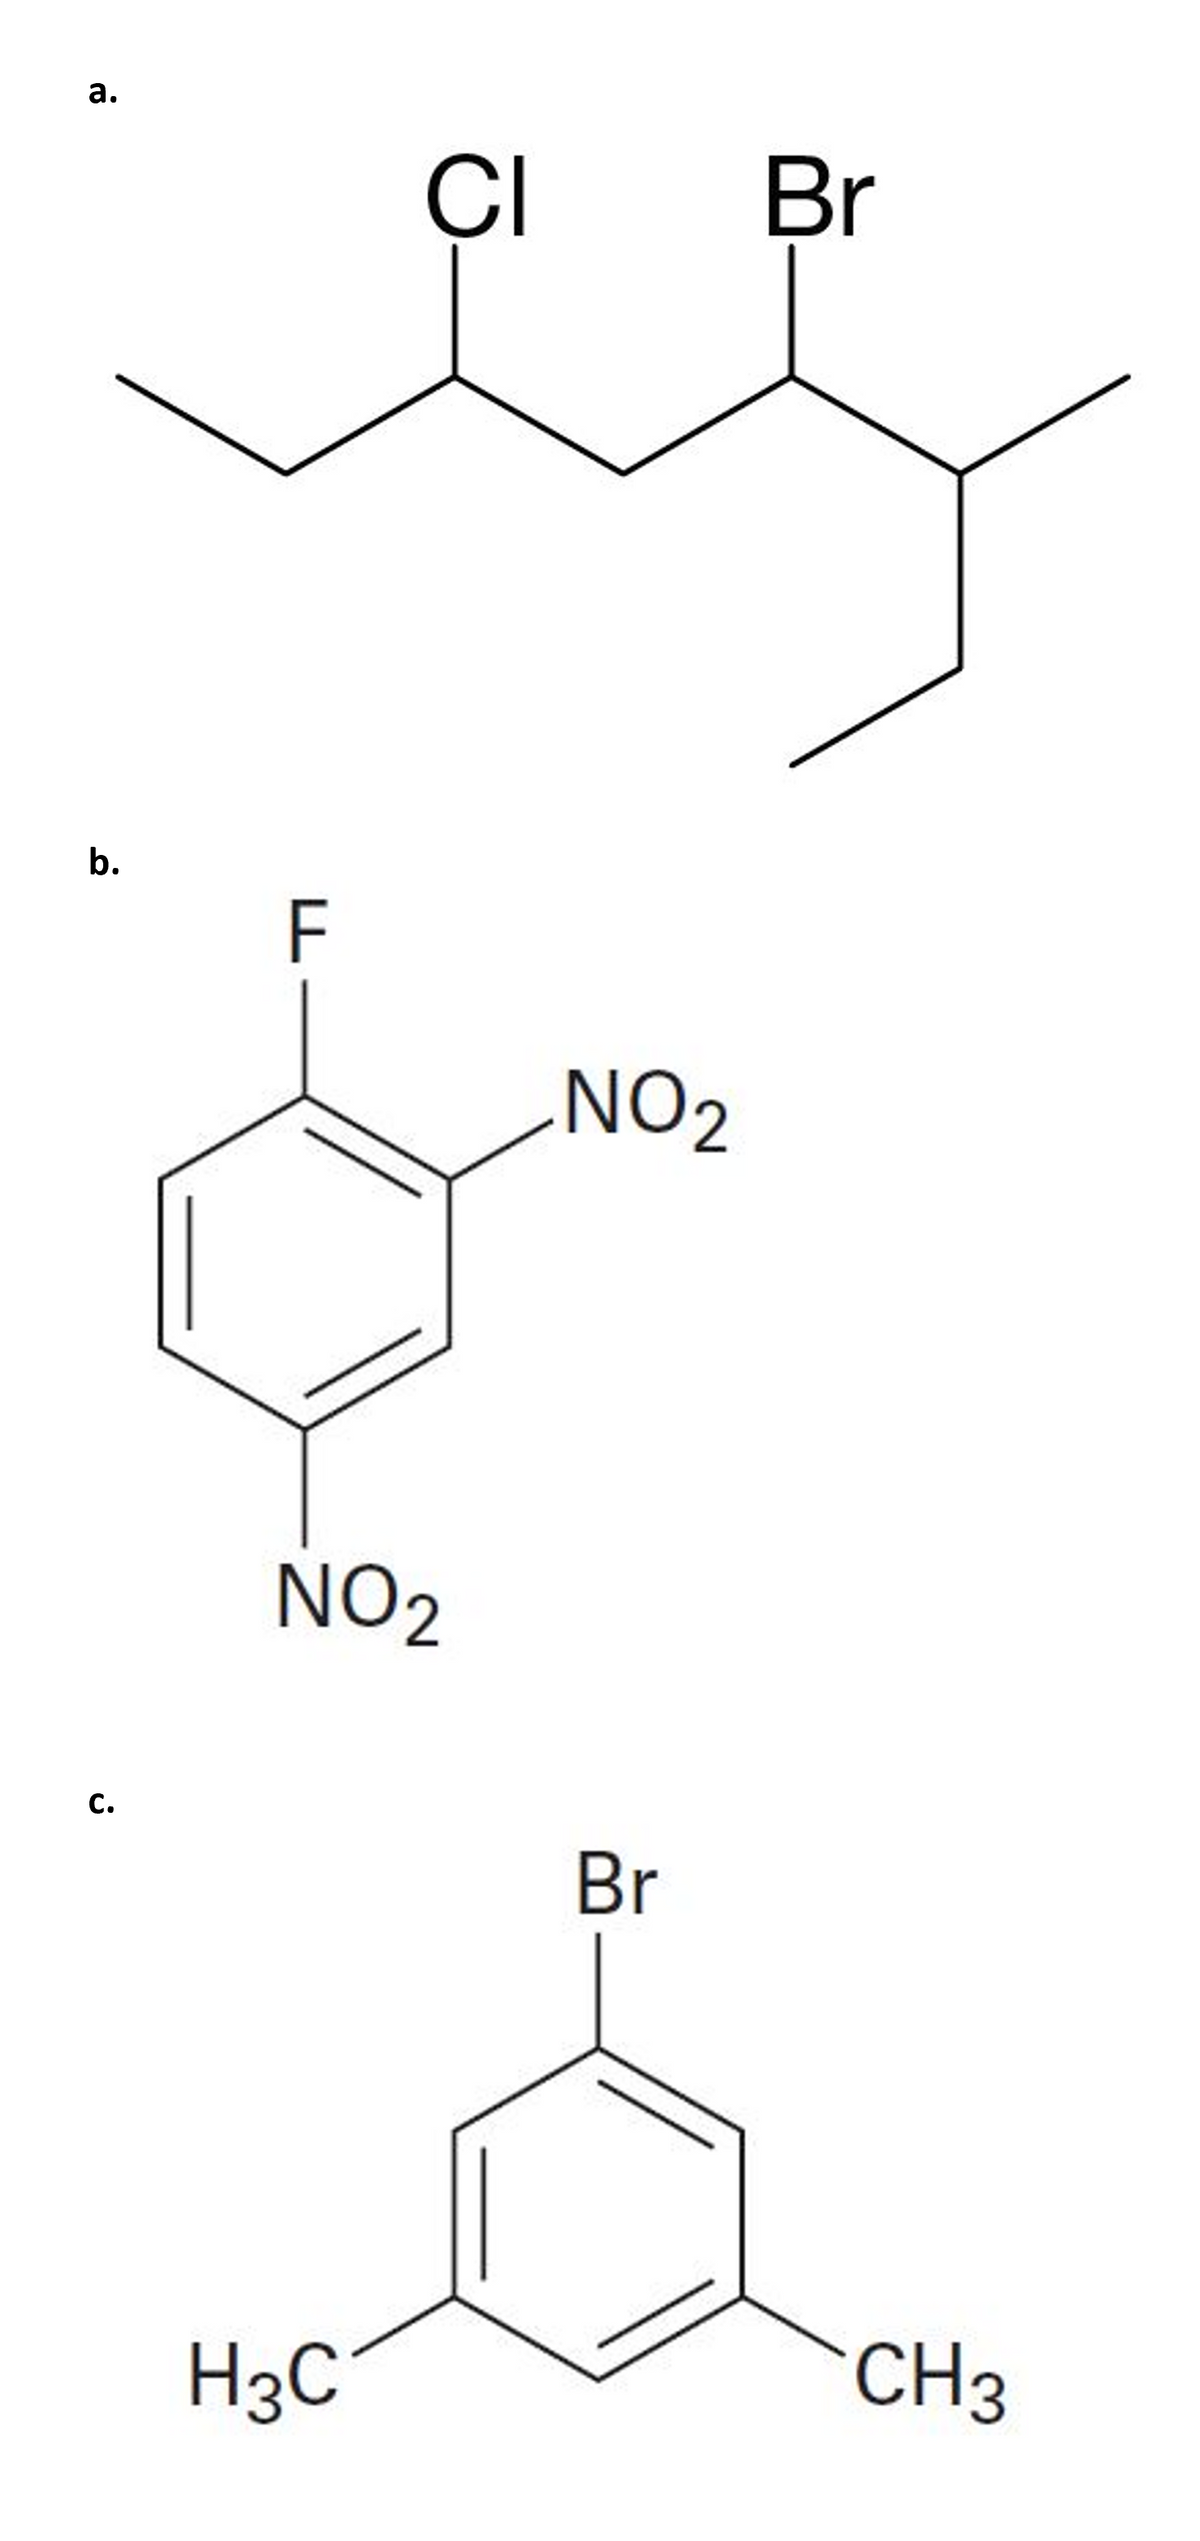 а.
CI Br
b.
F
NO2
NO2
с.
Br
H3C
CH3
